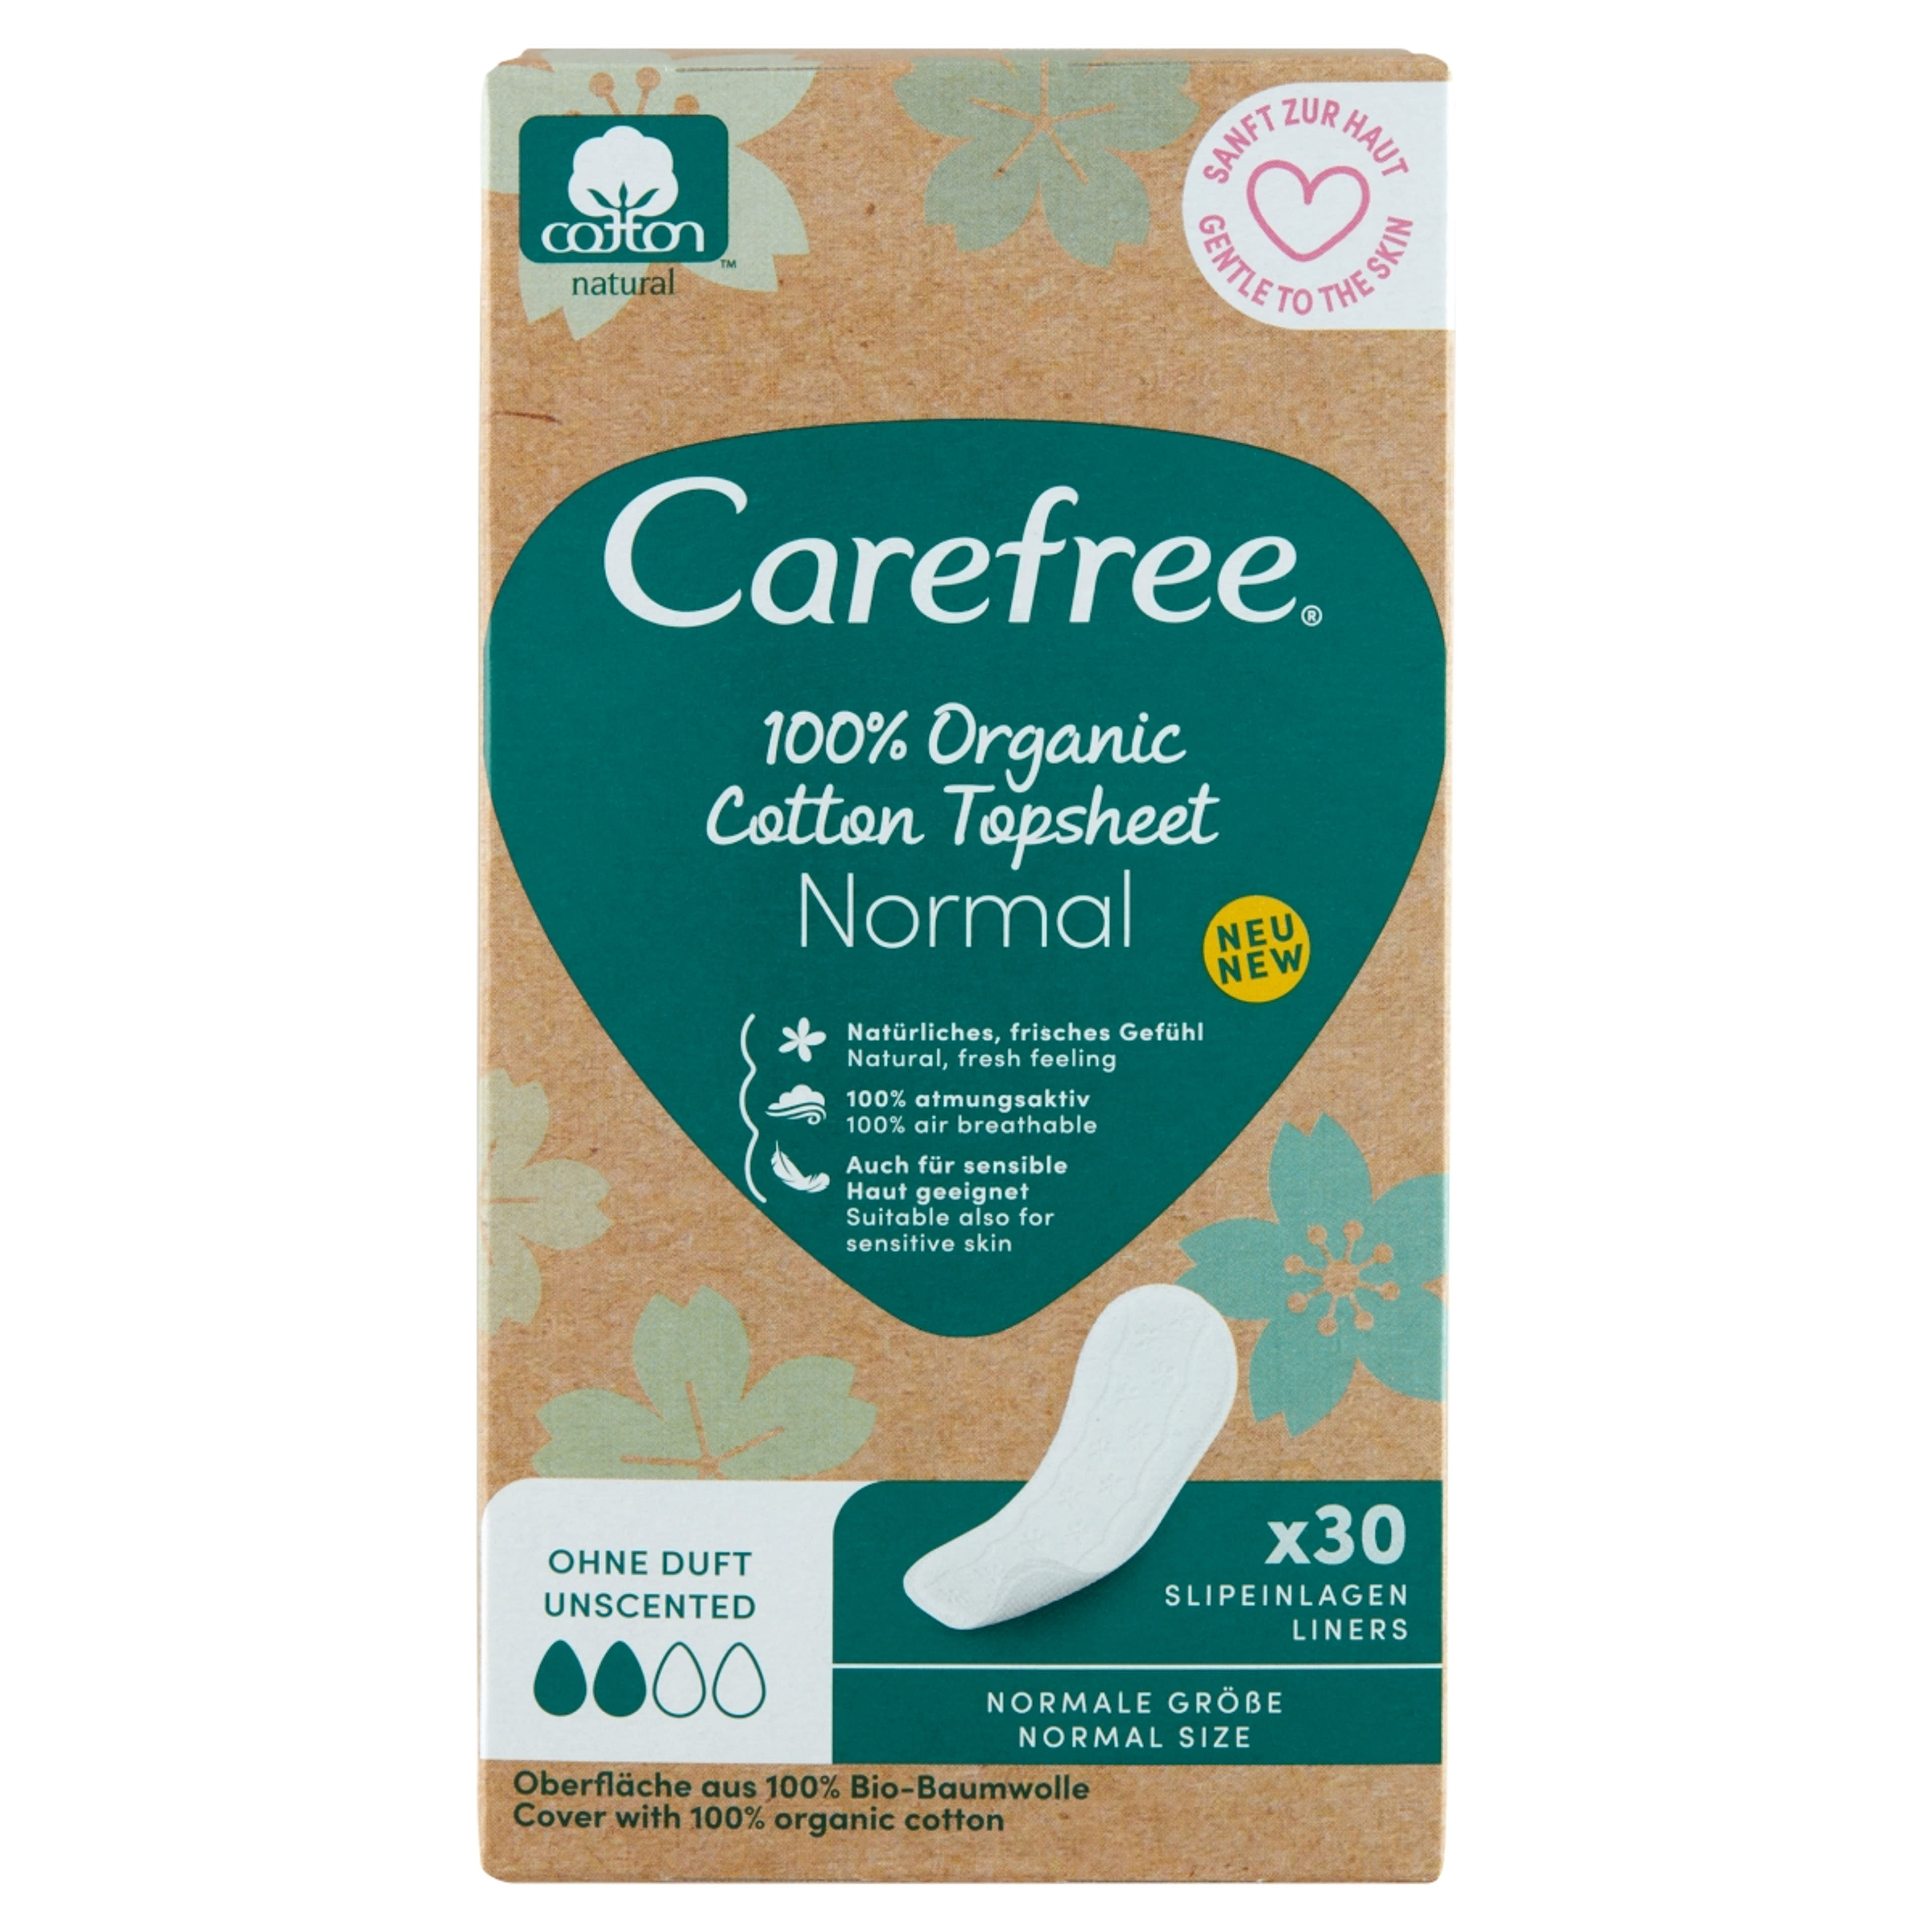 Carefree 100% Organic Cotton Topsheet Normal tisztasági betét illatmentes - 30 db-1